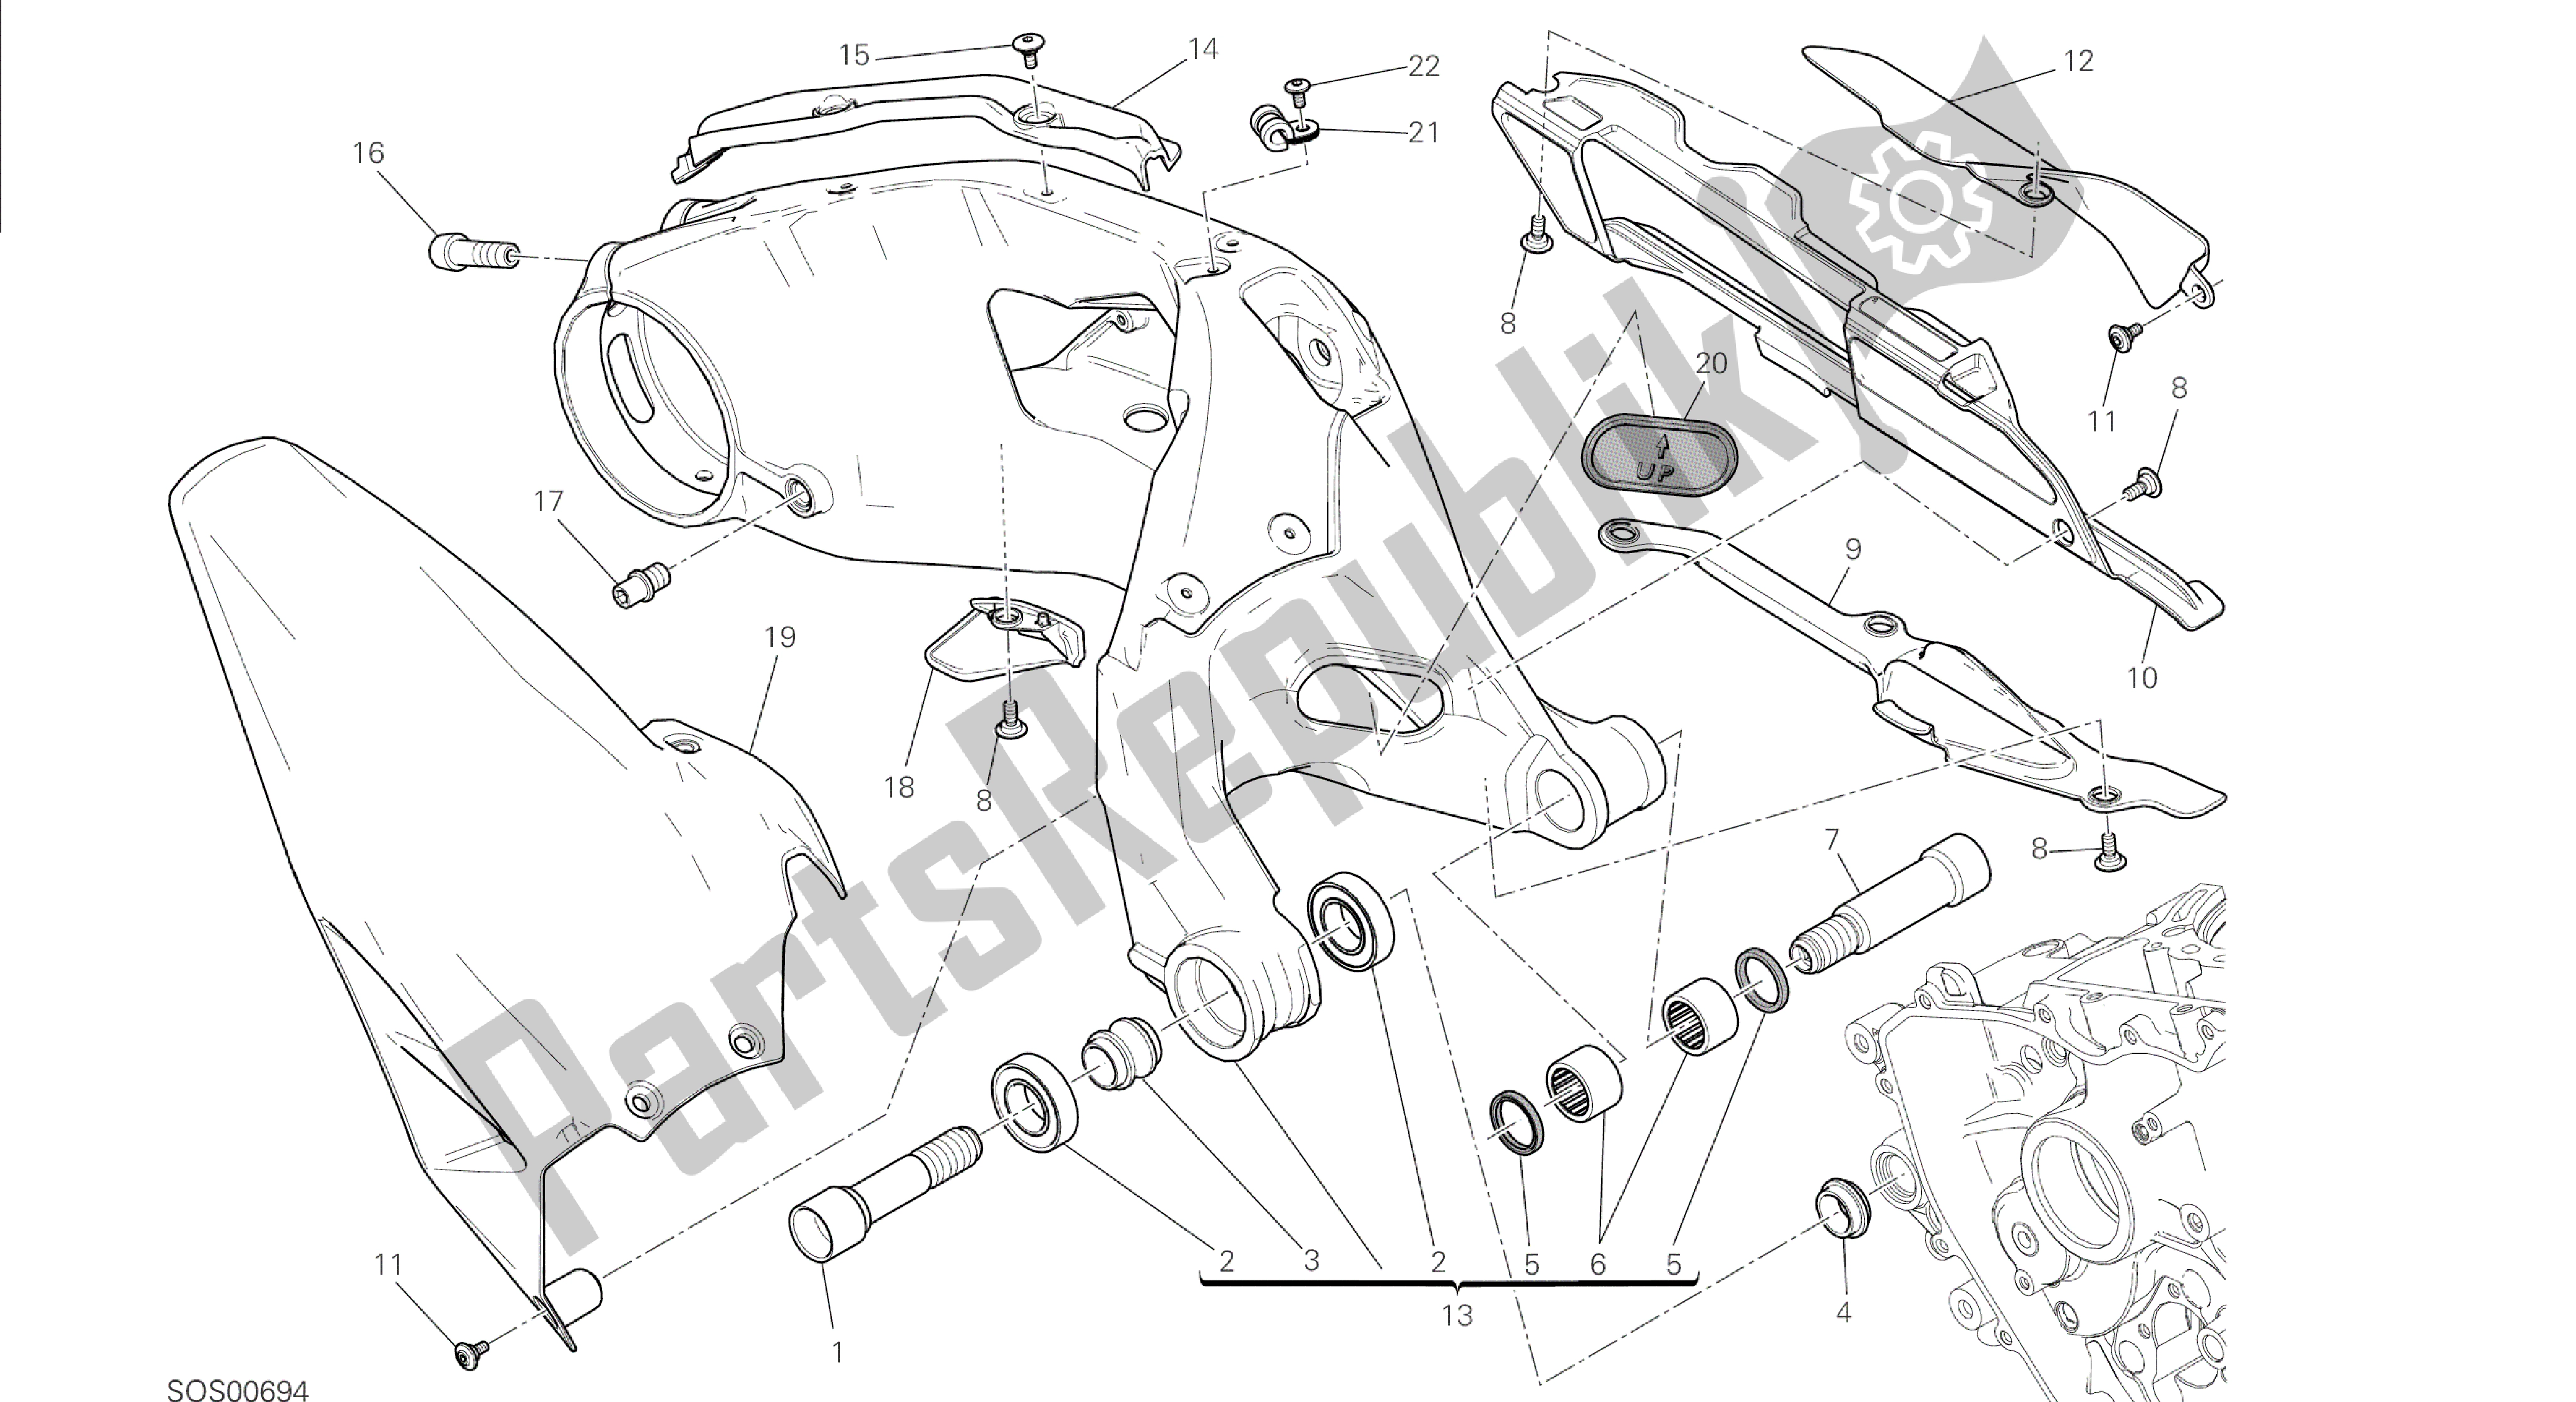 Todas las partes para Dibujo 28a - Forcellone Posteriore [mod: 1299; Xst: Marco De Grupo Aus, Eur, Fra, Jap, Twn] de Ducati Panigale 1299 2015